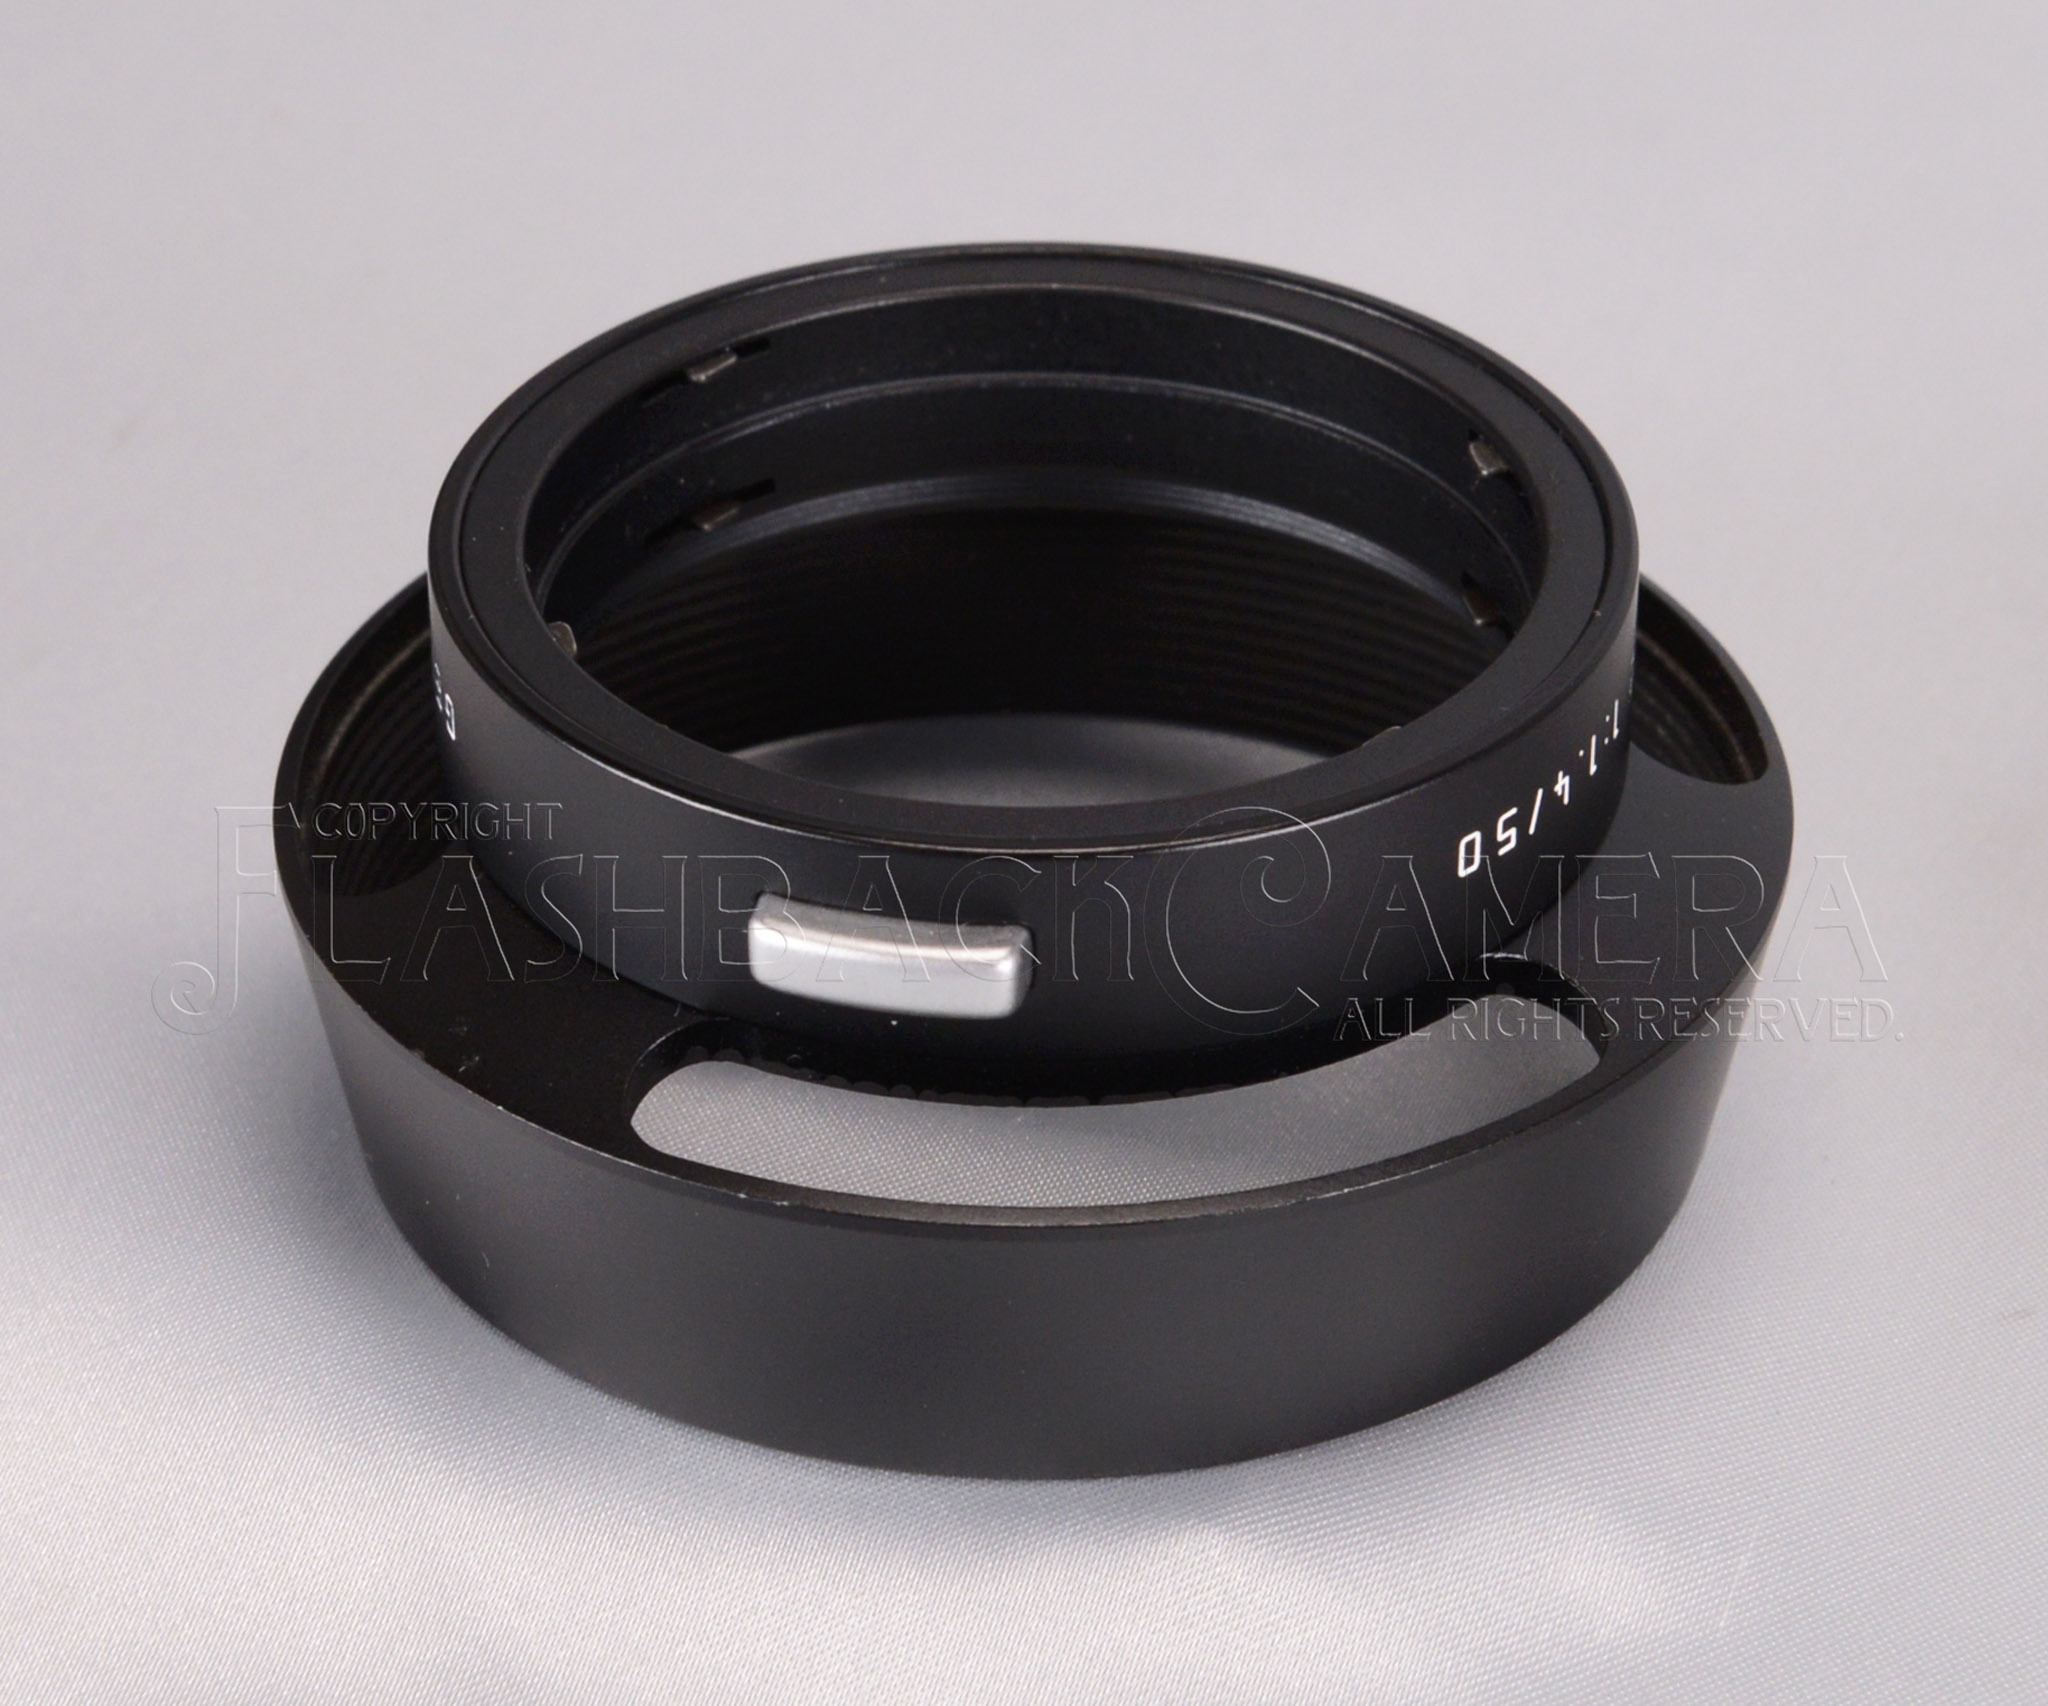 ズミルックス 50mm f1.4 2nd用レンズフード 12586 デジタル文字 極上品